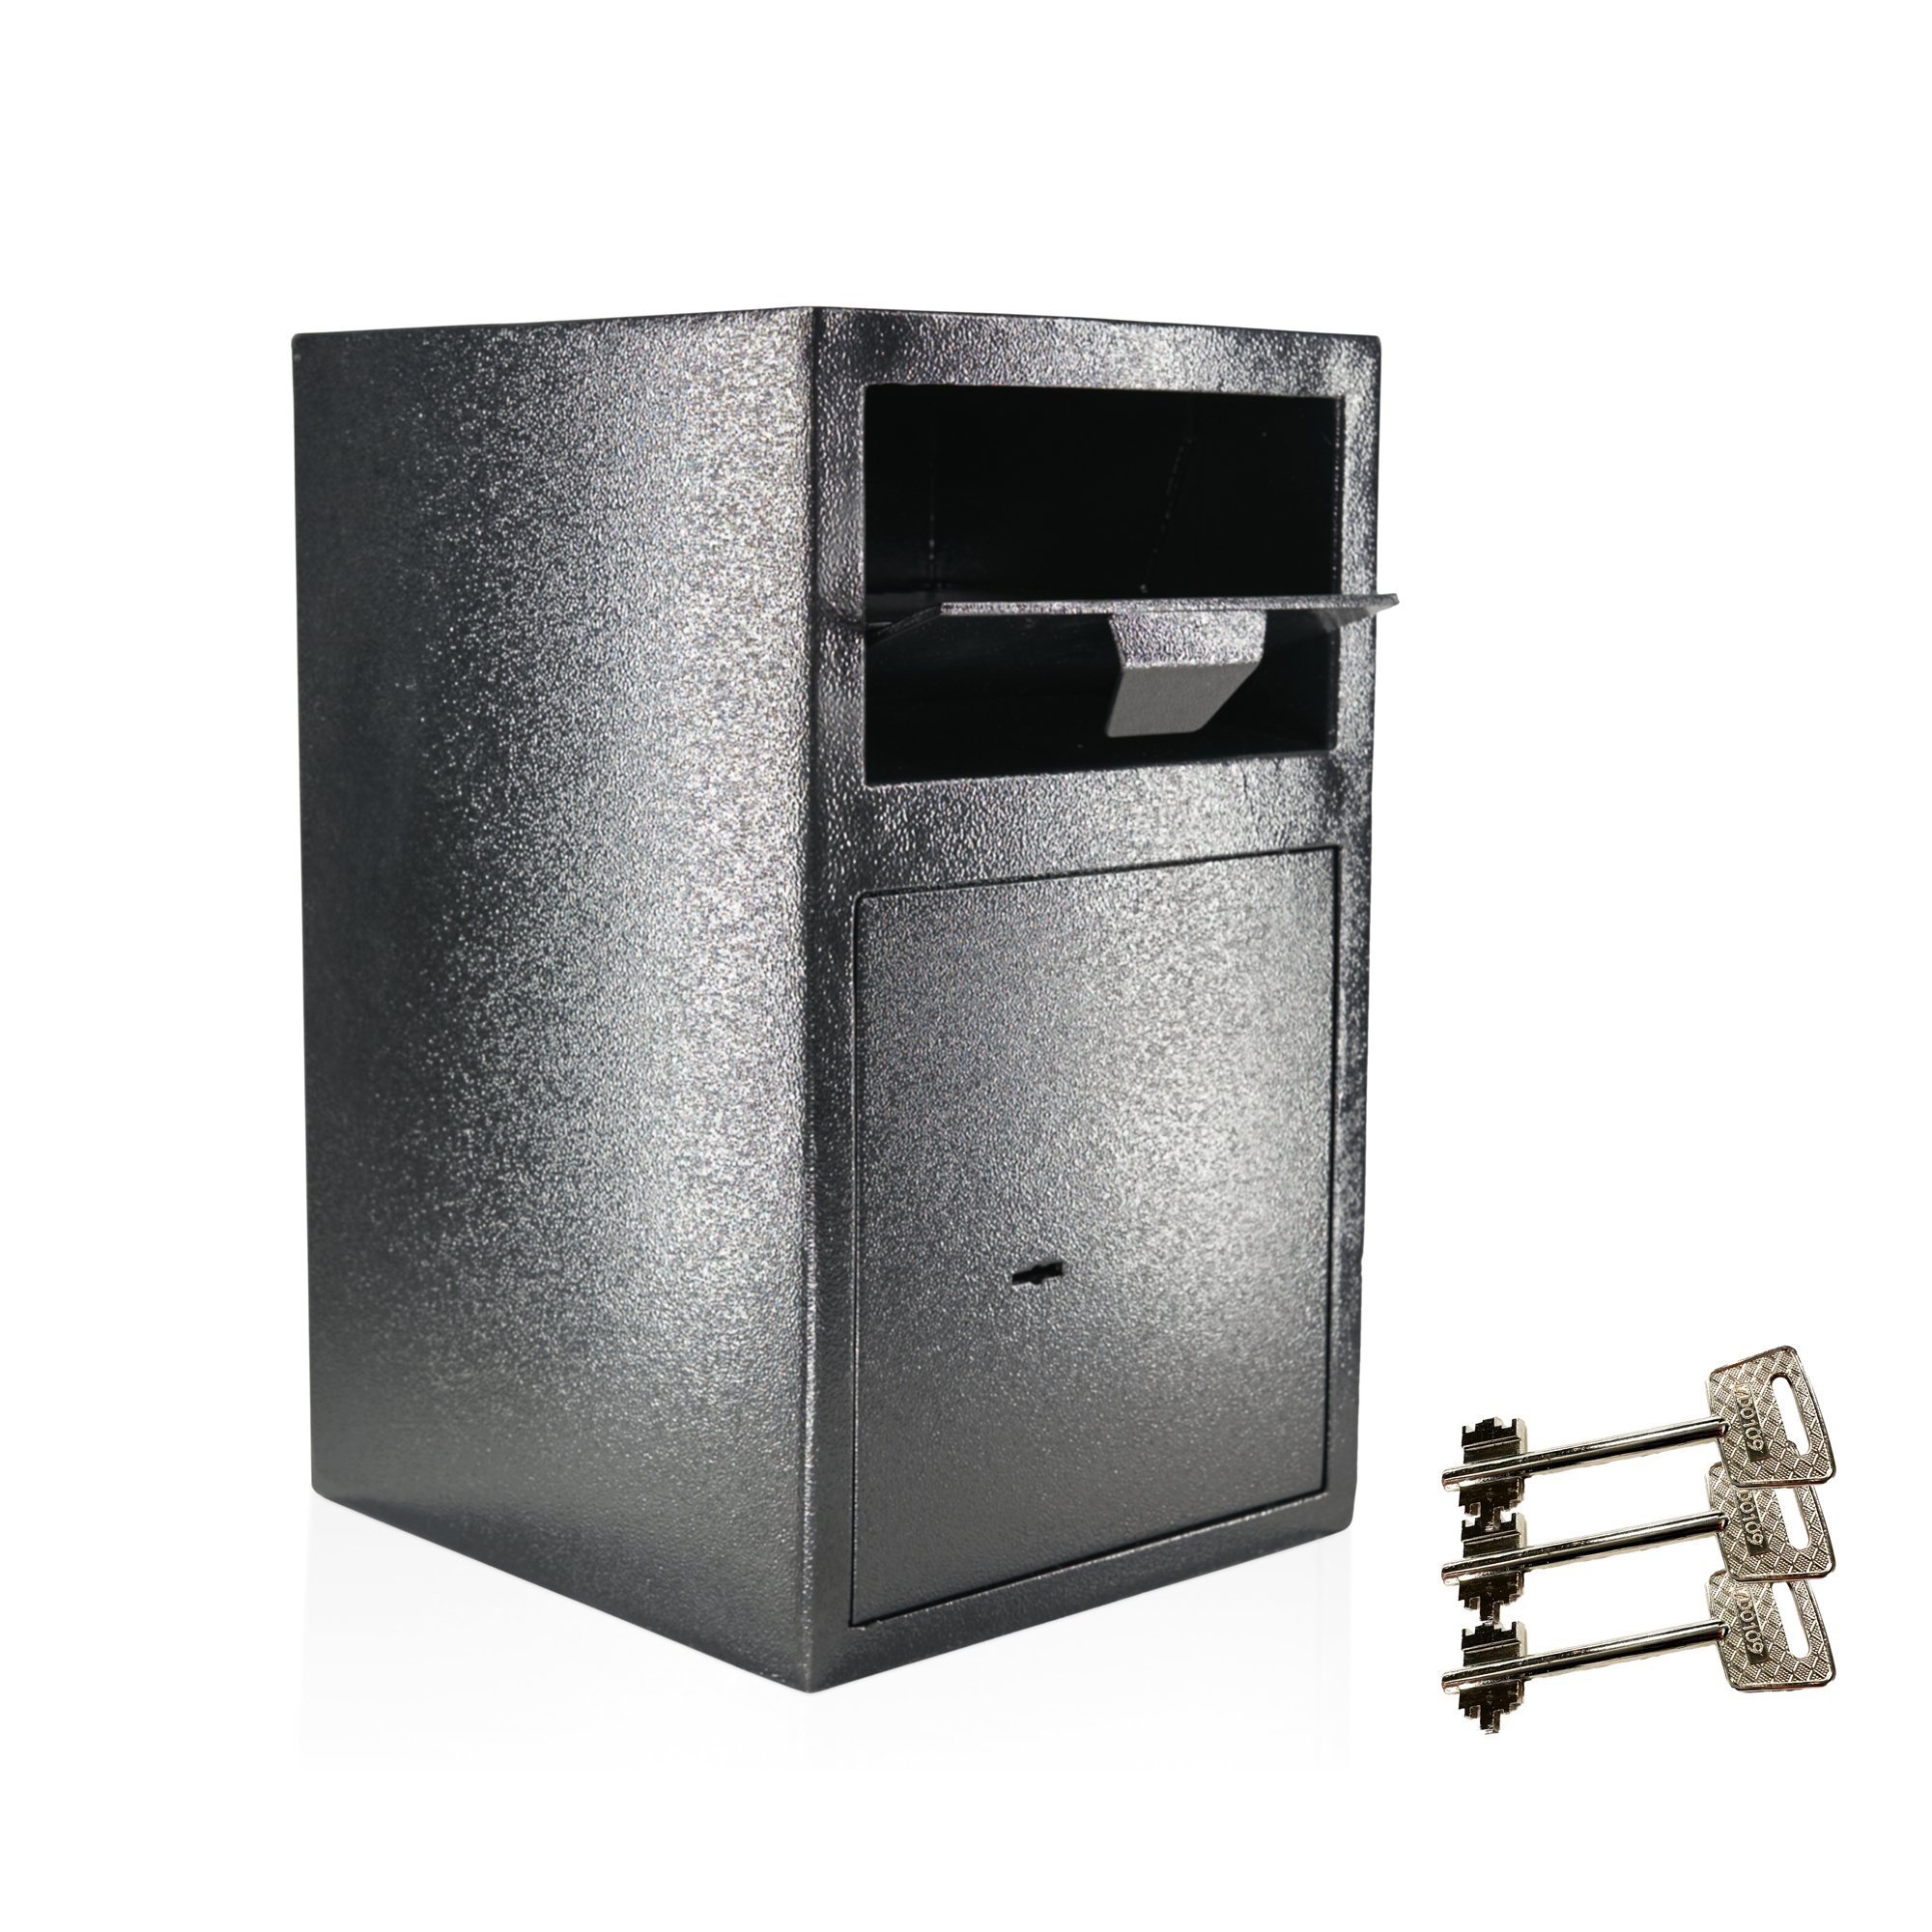 Caja de depósito | Caja fuerte con ranura de depósito | Clase de seguridad A | Caja de buzón | 3 llaves